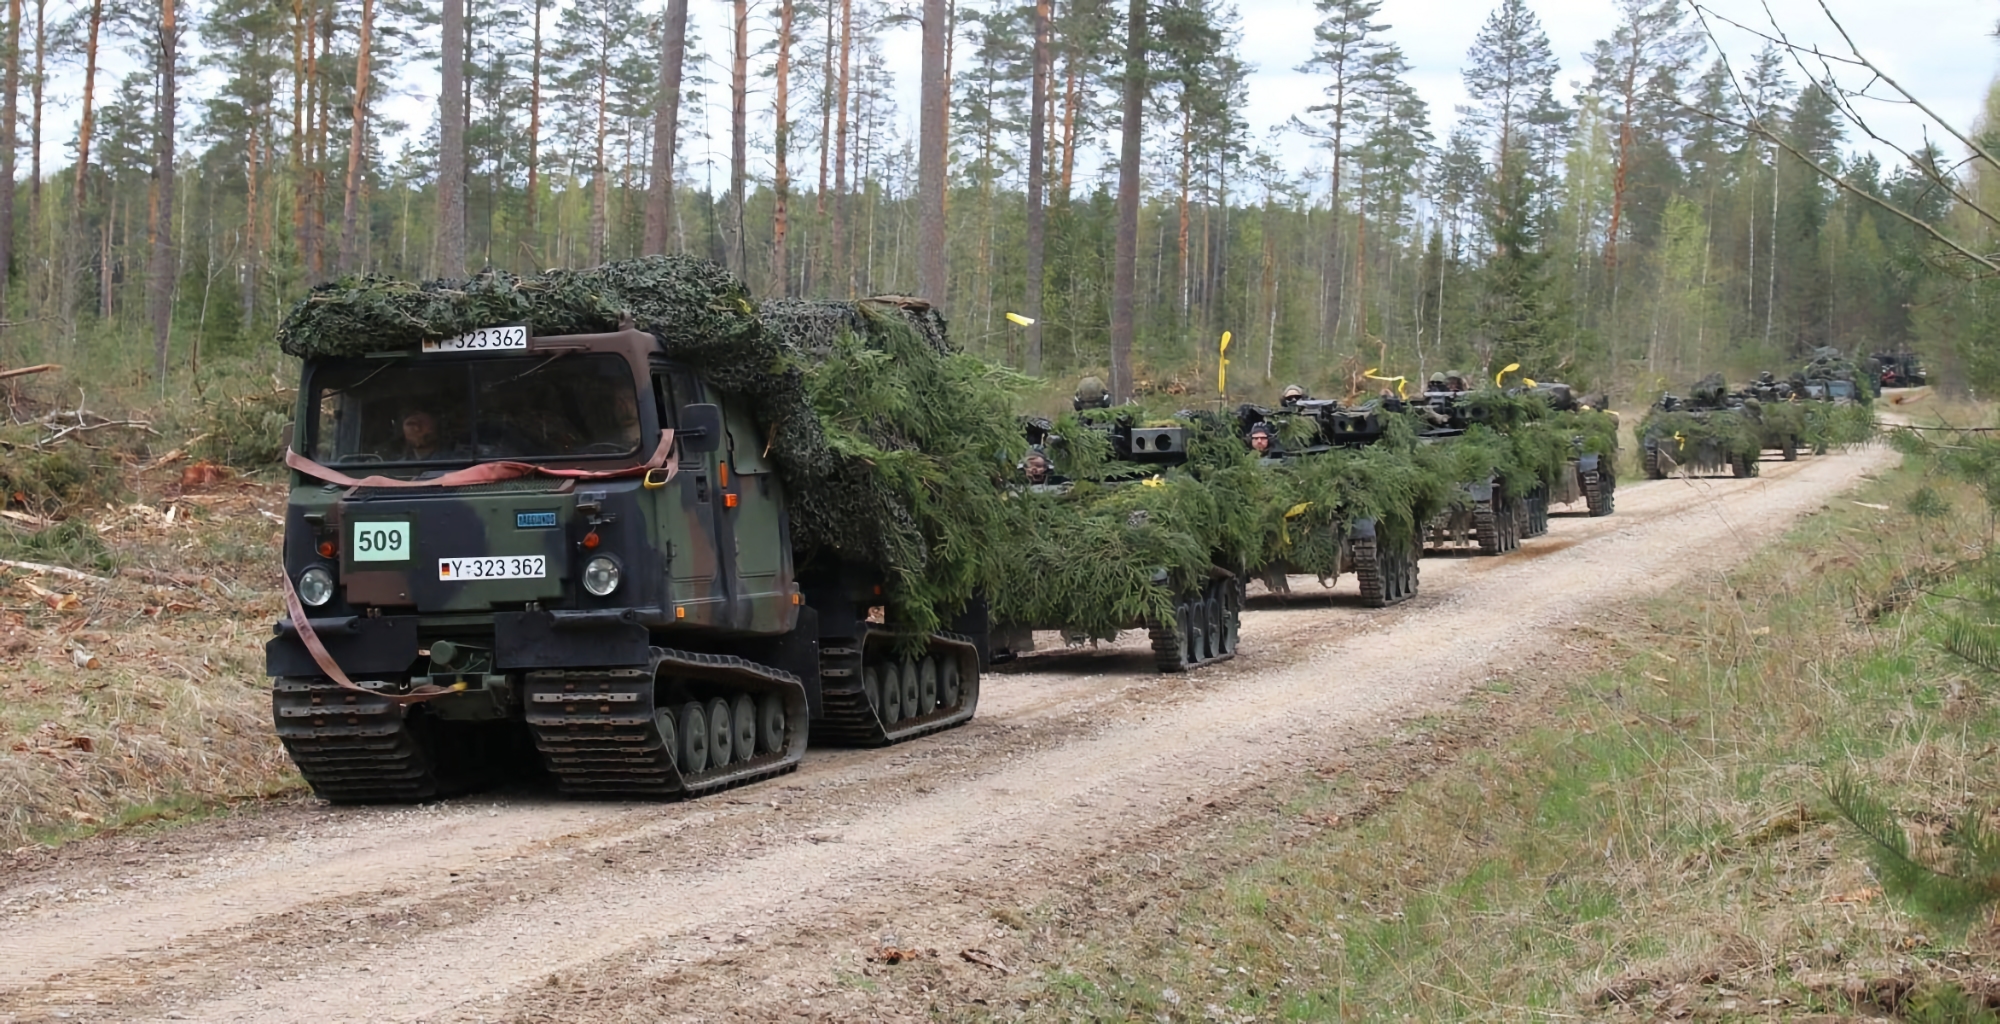 Deutschland schickt neues Militärhilfepaket an die Ukraine, das u.a. Geländewagen vom Typ Bandvagn 206 und andere Waffen enthält